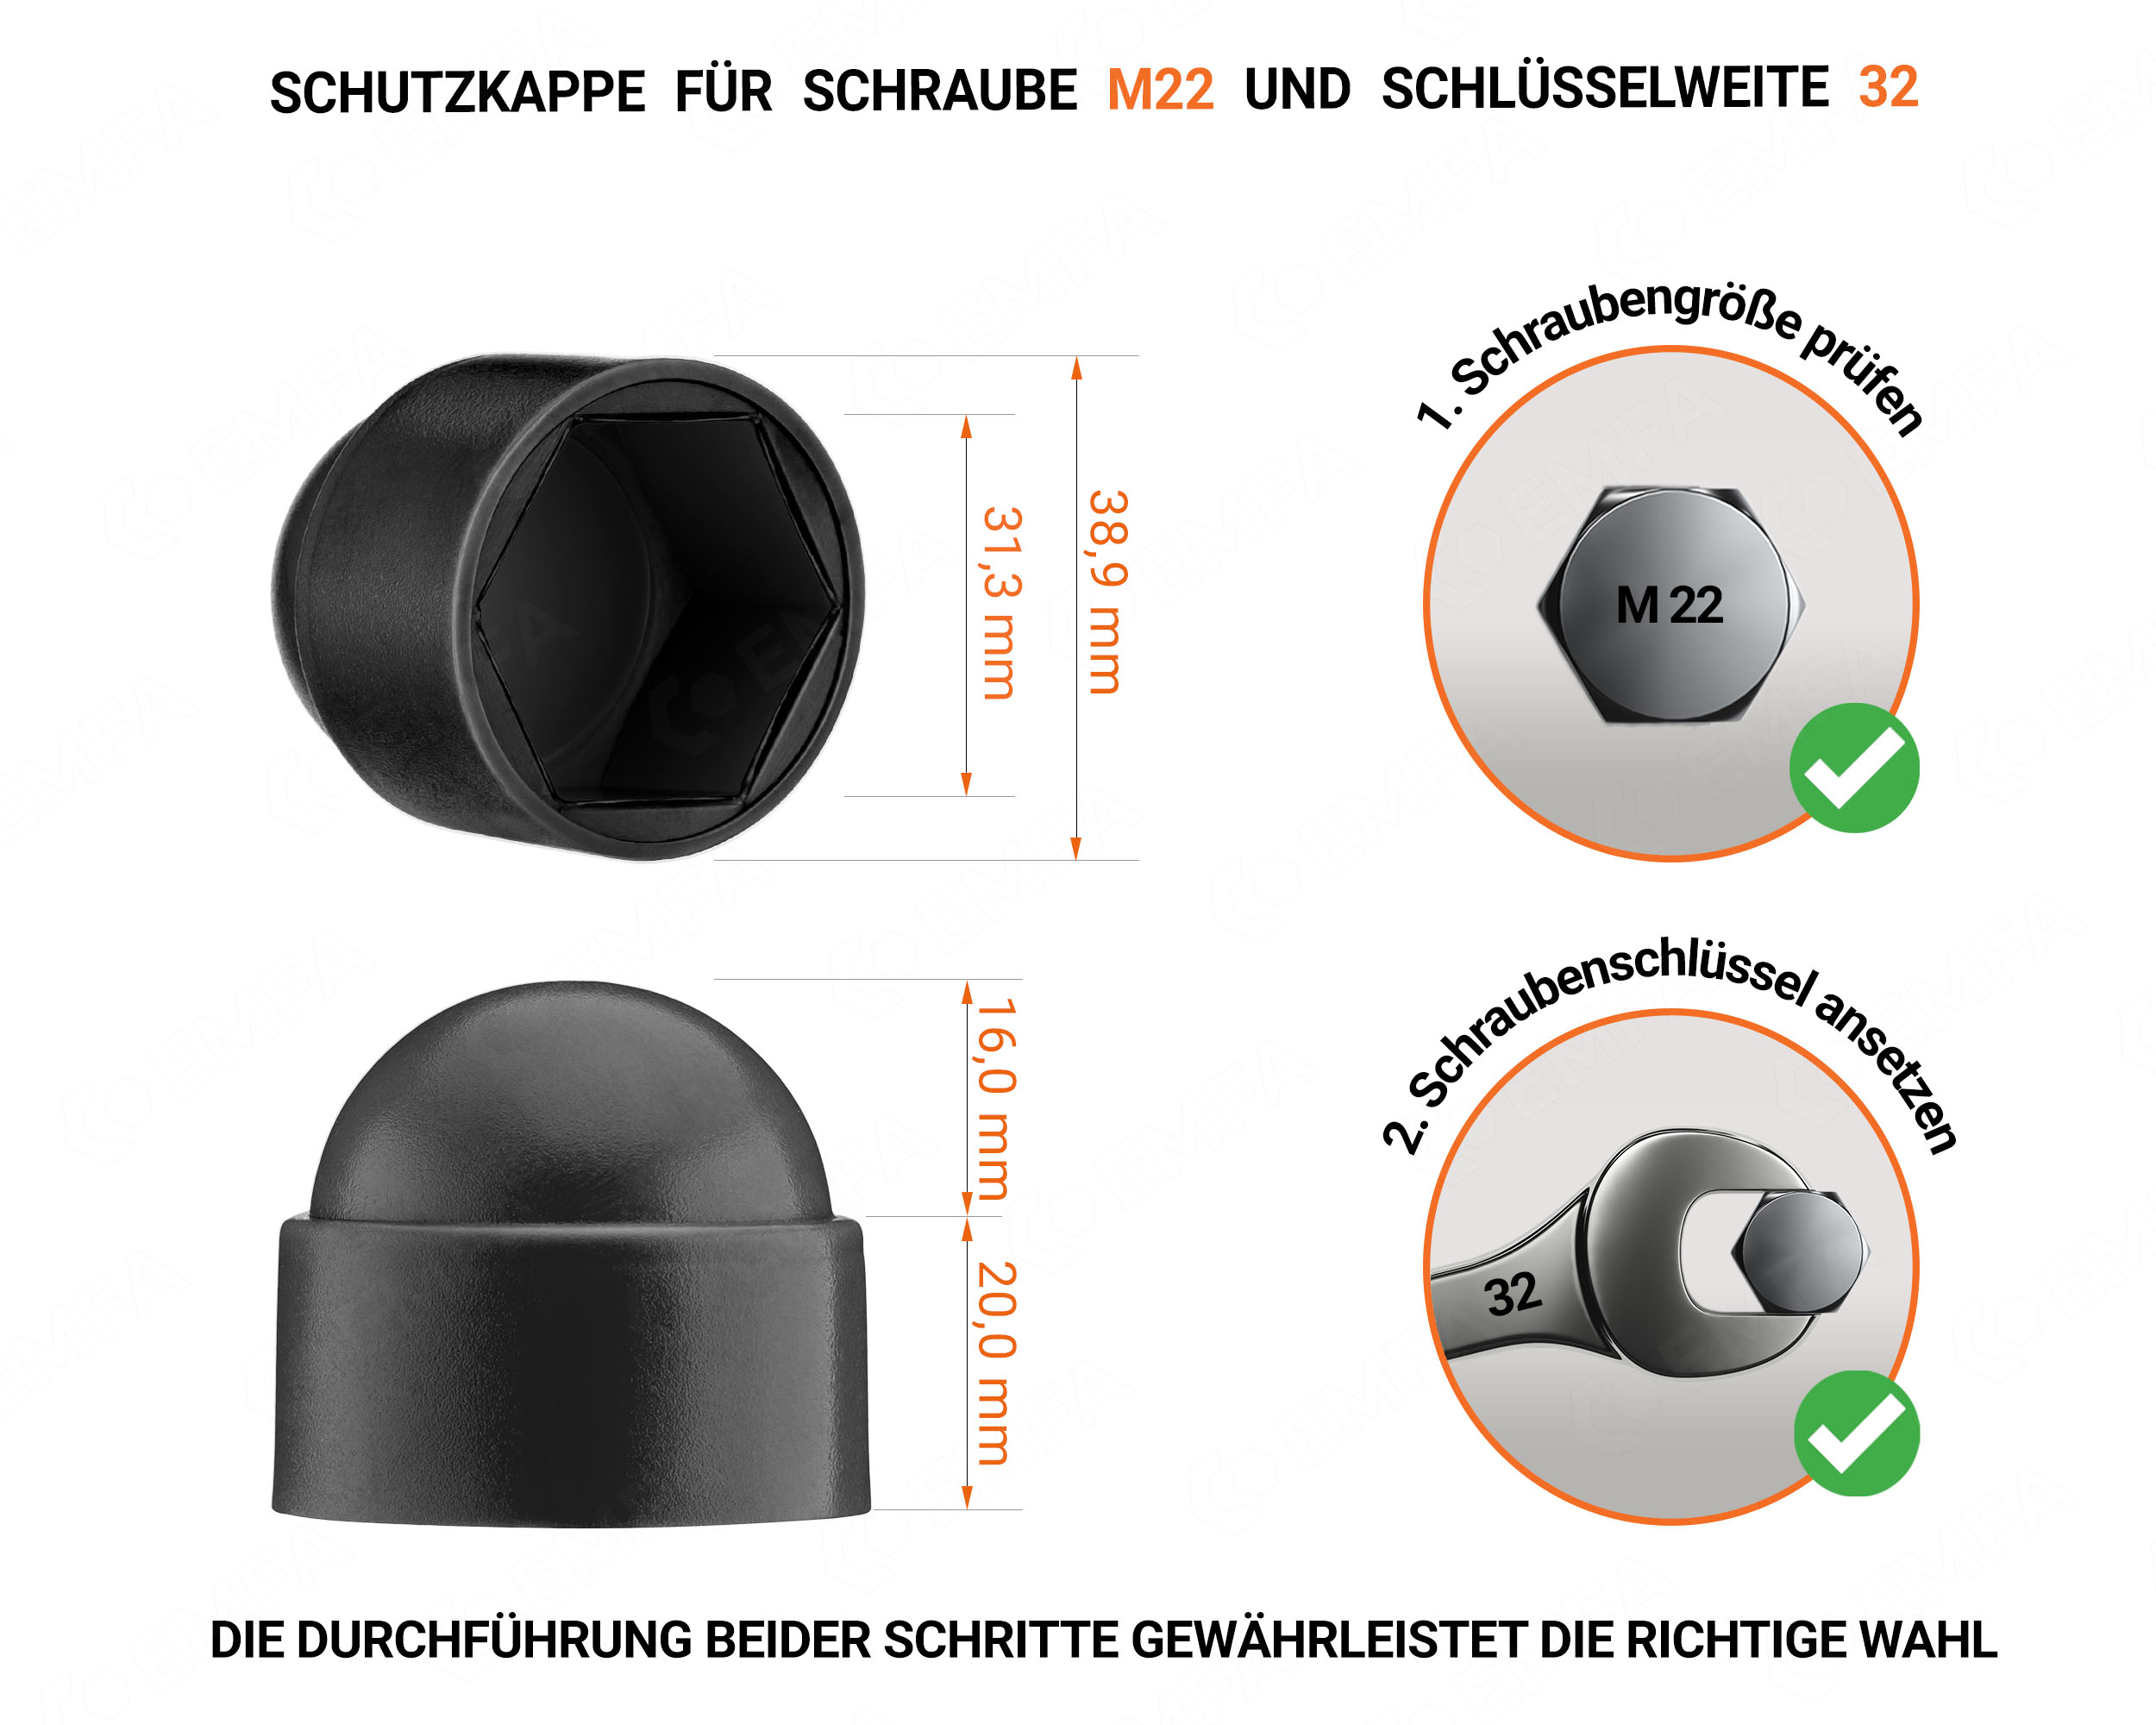 Schwarze Schutzkappen für Schrauben M22 Schlüsselweite 32 mit technischen Abmessungen und Anleitung für korrekte Messung